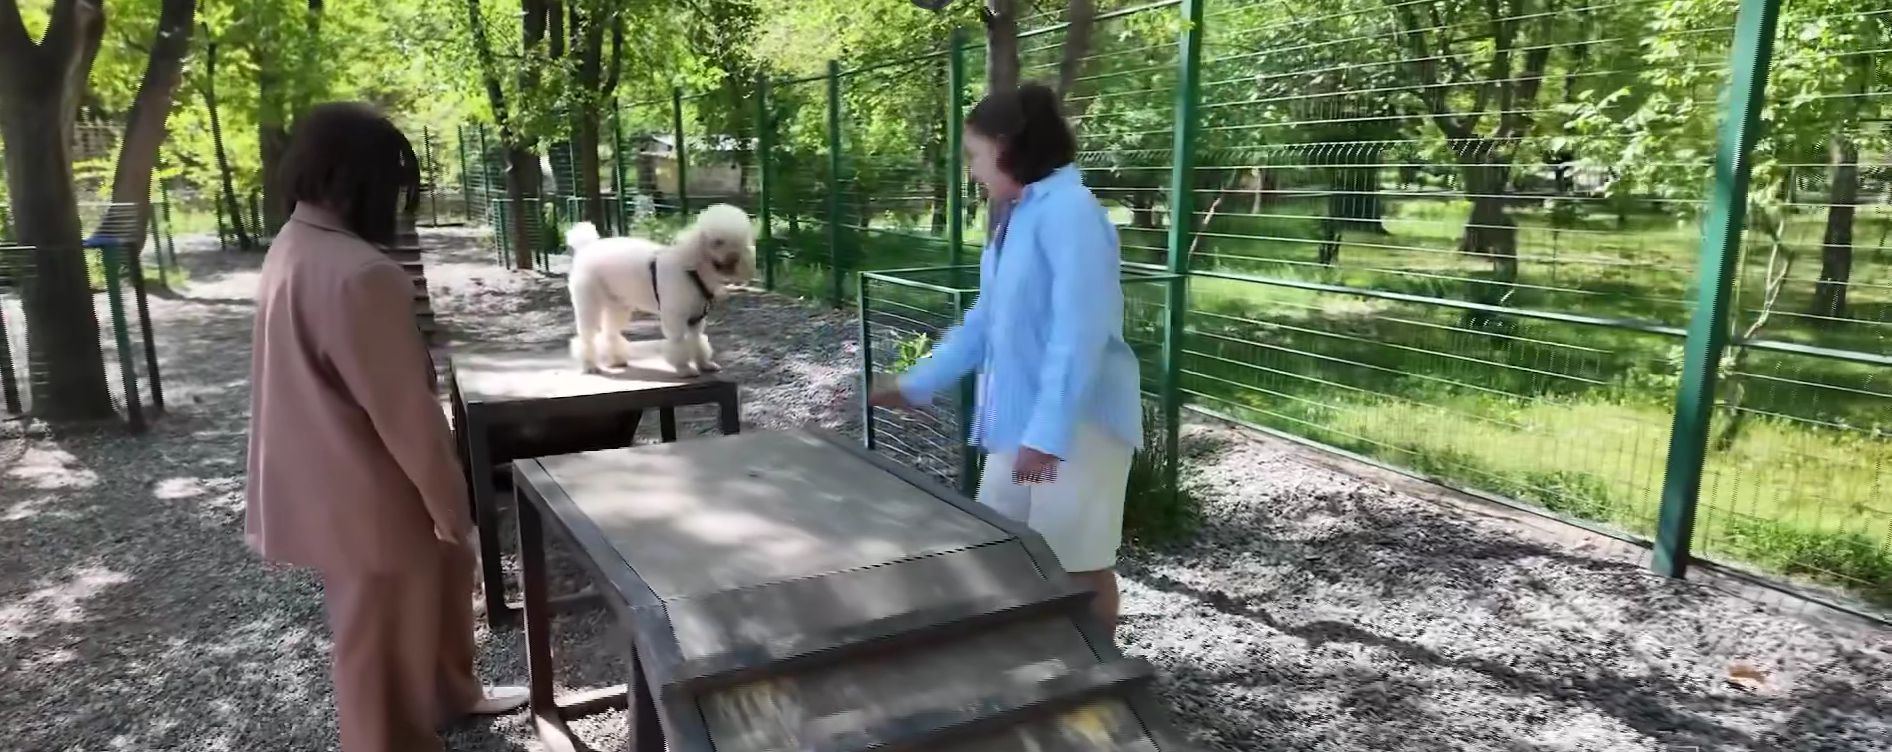 Երևանում ընտանի շների համար կառուցվել են հատուկ զբոսայգիներ (տեսանյութ)